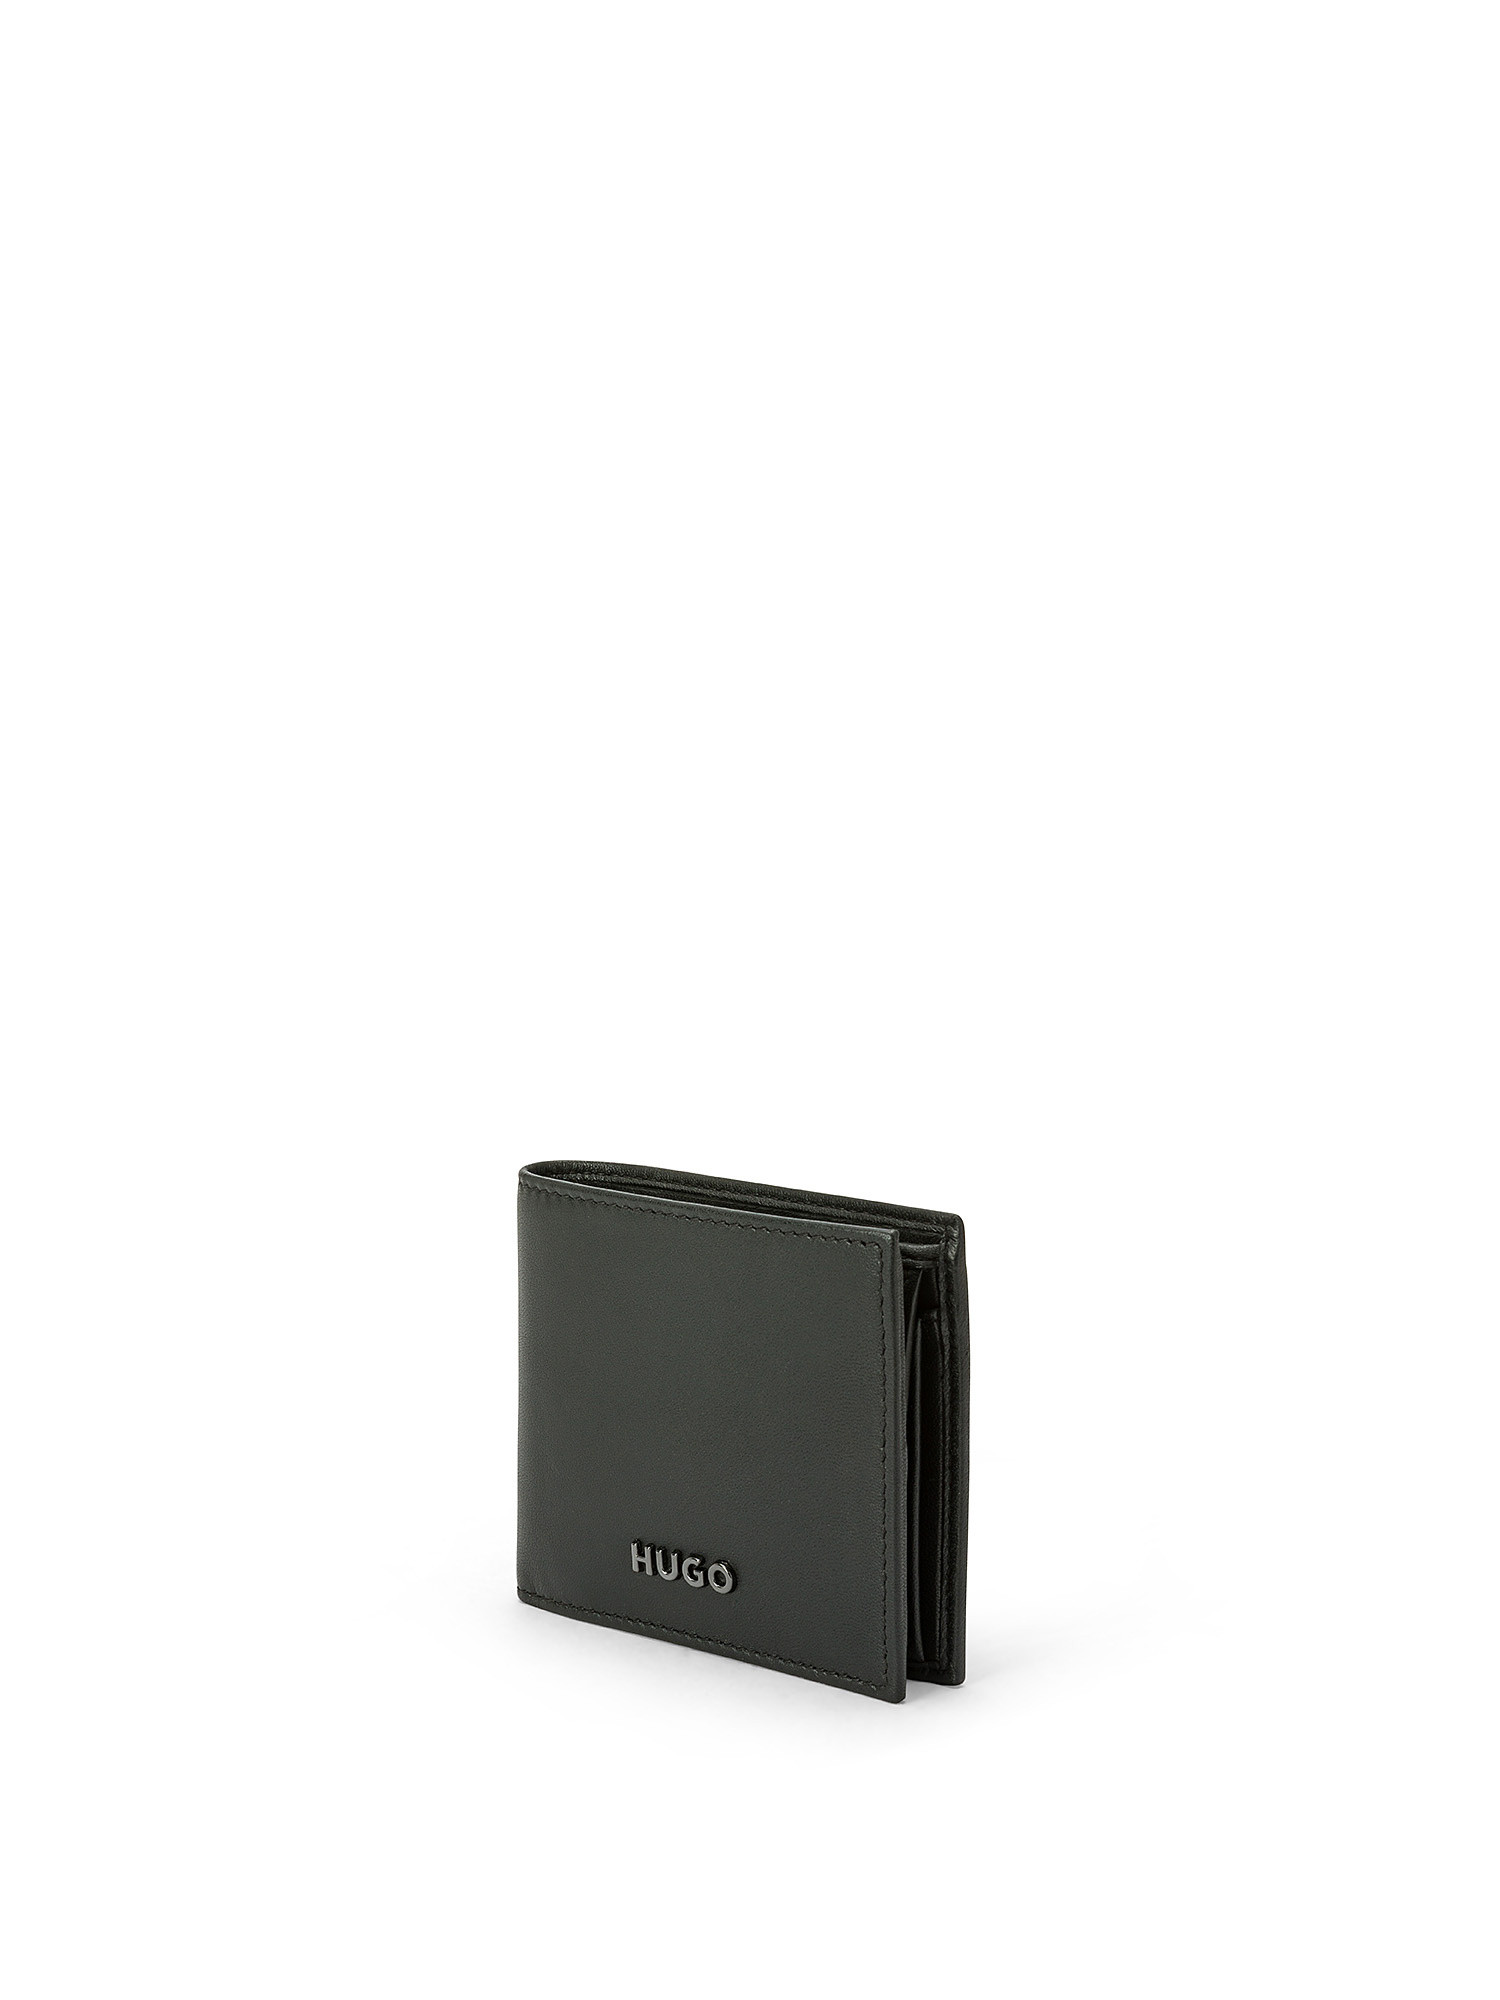 Hugo - Leather wallet with logo, Black, large image number 1